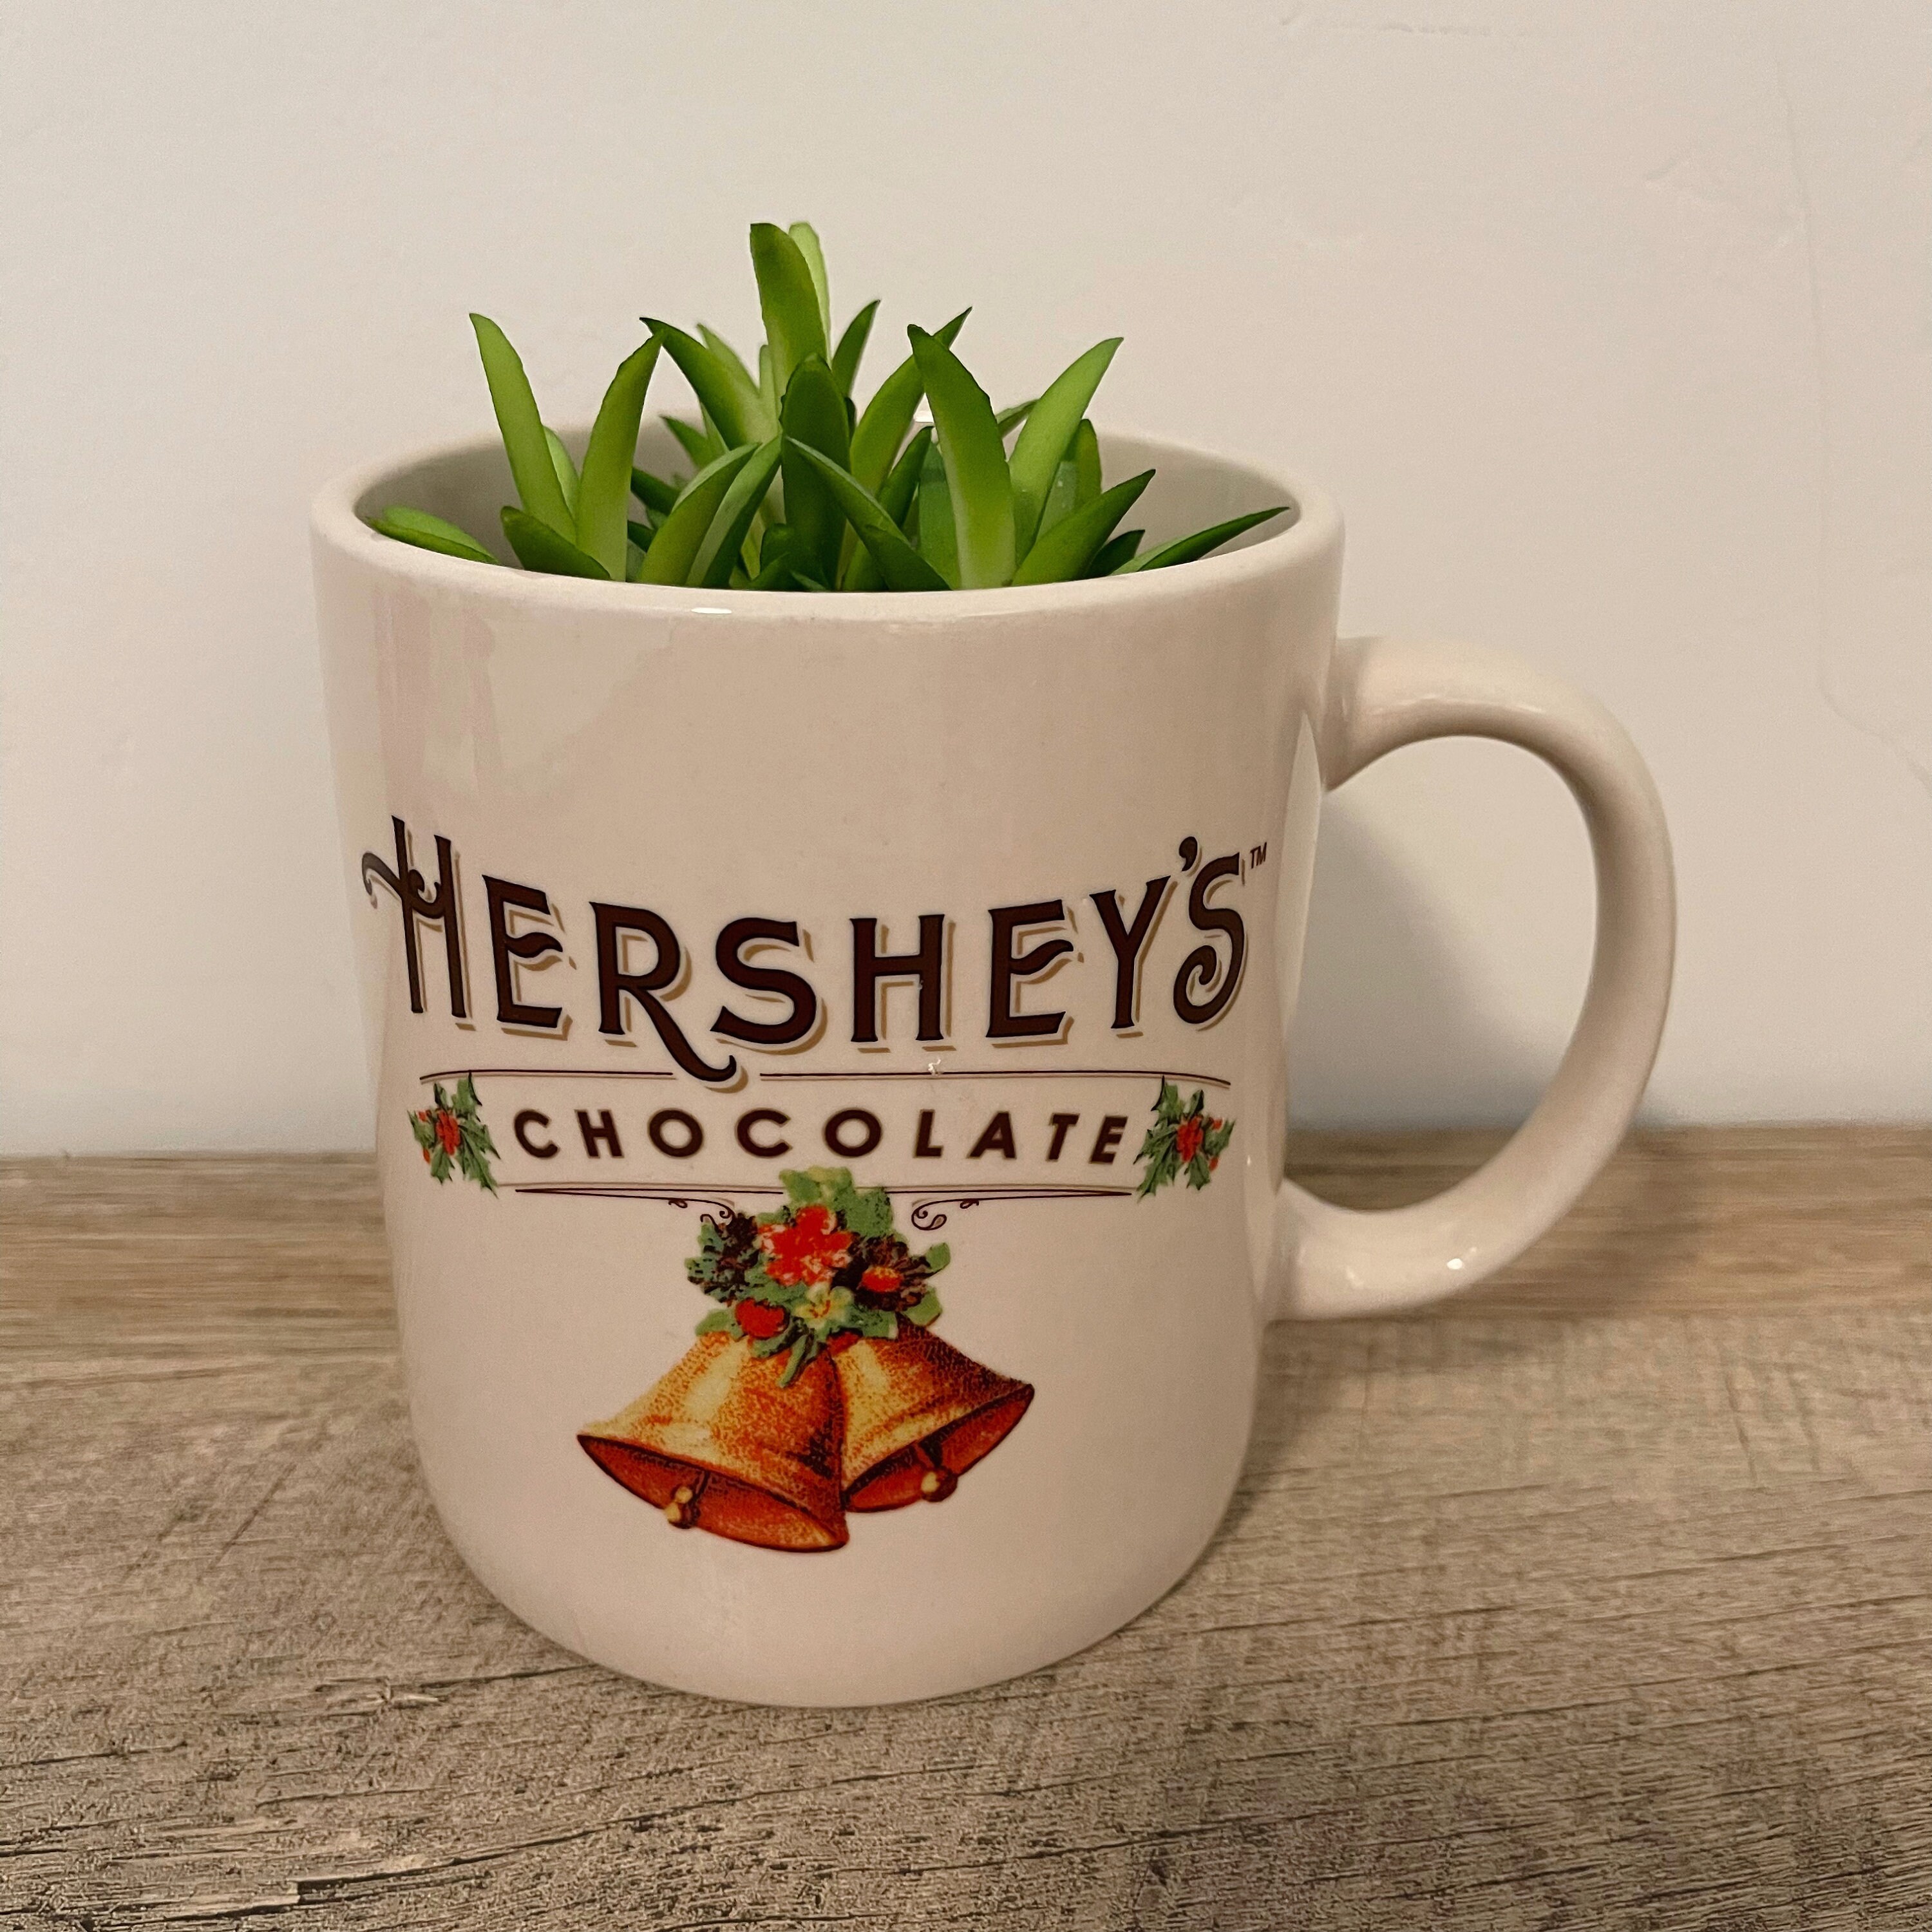 (2) Hershey's Chocolate Coffee Cup Mug Large Vintage Style Christmas 32 oz.